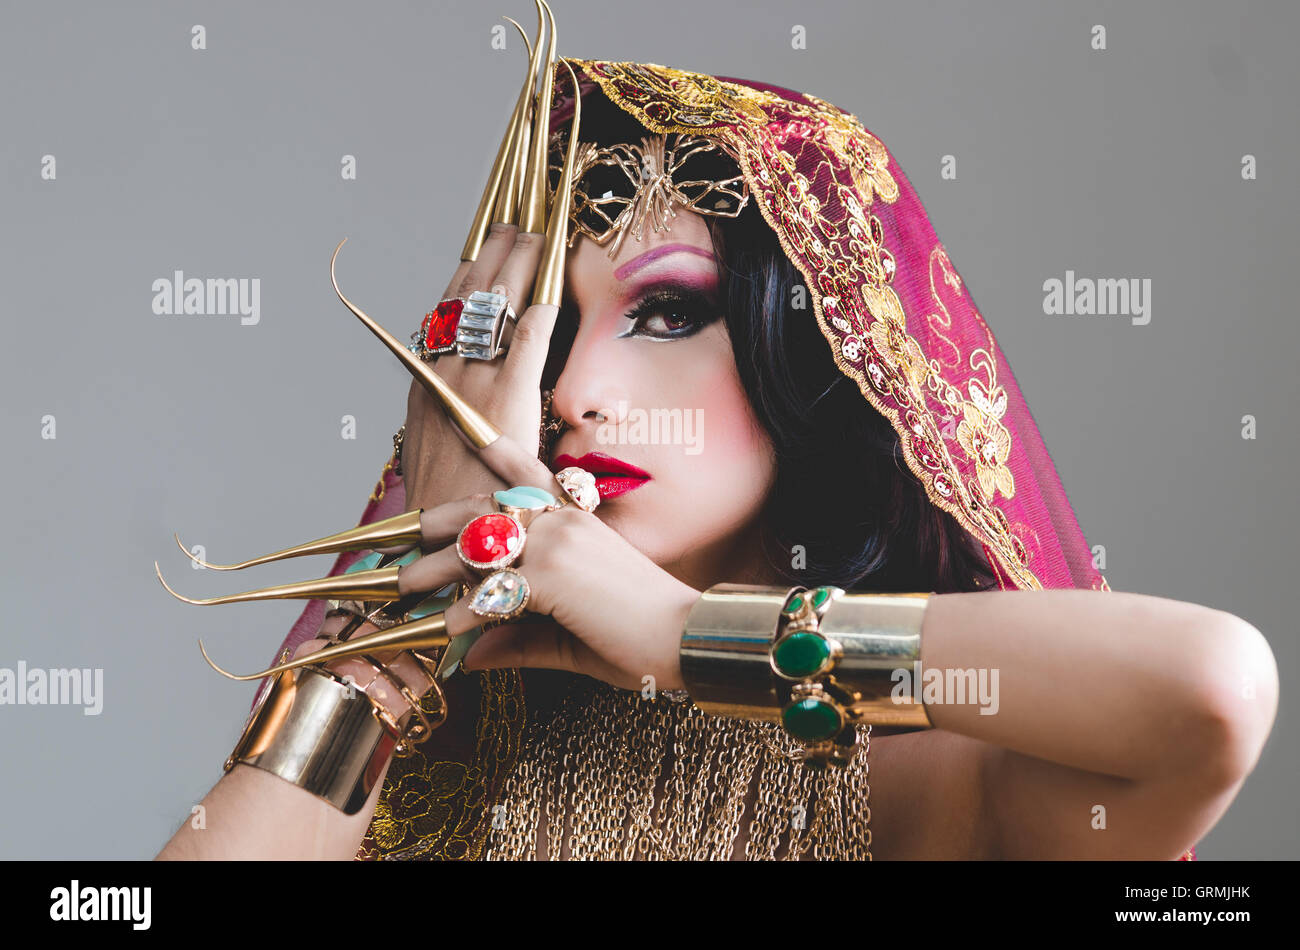 Kopfschuss Frau gekleidet in traditionellen hinduistischen Kleidung, stark  verziert in gold und elegante Schleier, extrem lange Fingernägel,  künstlerisch posiert für Kamera, Hinduismus Tänzerin Konzept  Stockfotografie - Alamy